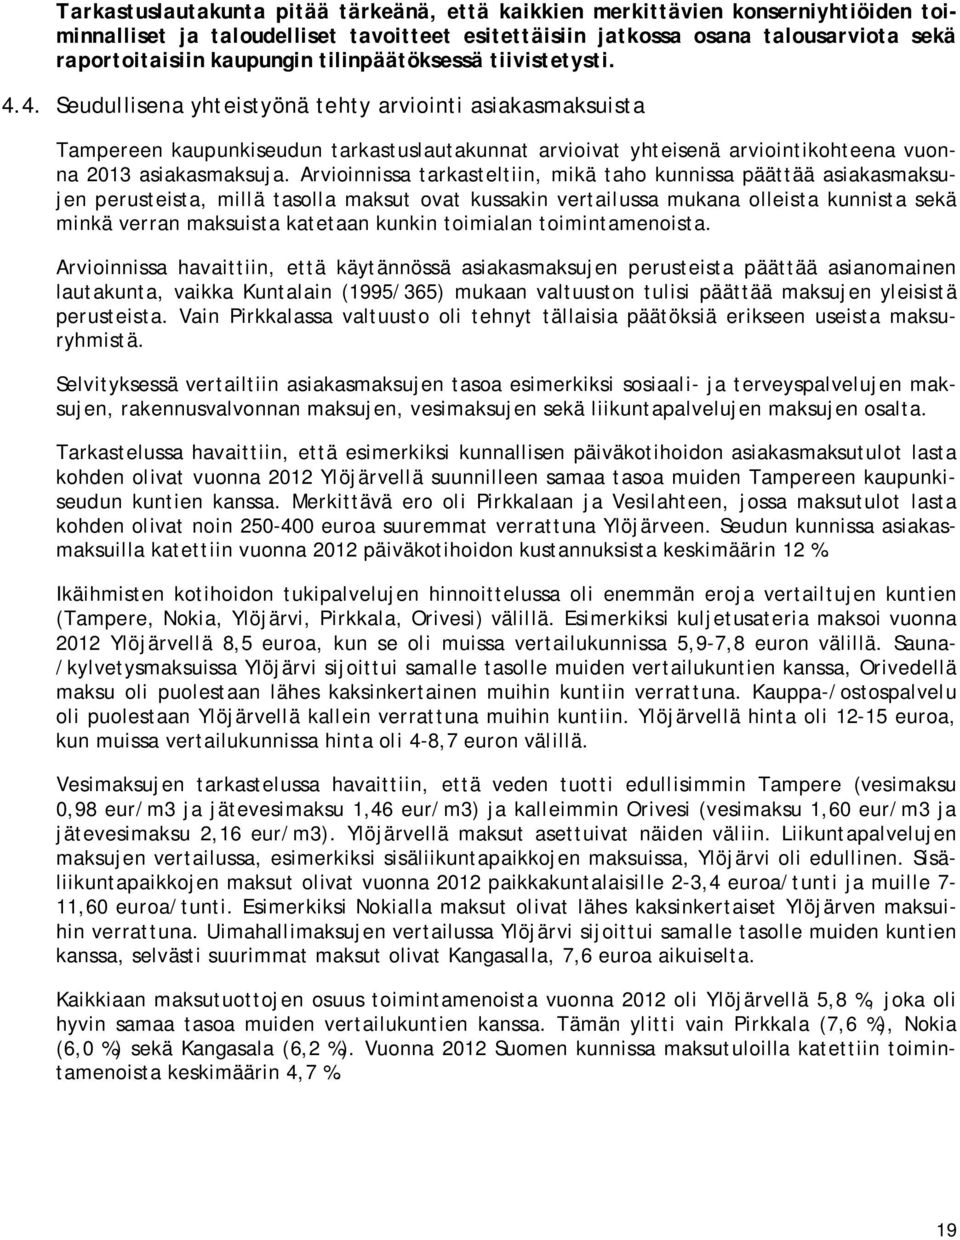 4. Seudullisena yhteistyönä tehty arviointi asiakasmaksuista Tampereen kaupunkiseudun tarkastuslautakunnat arvioivat yhteisenä arviointikohteena vuonna 2013 asiakasmaksuja.